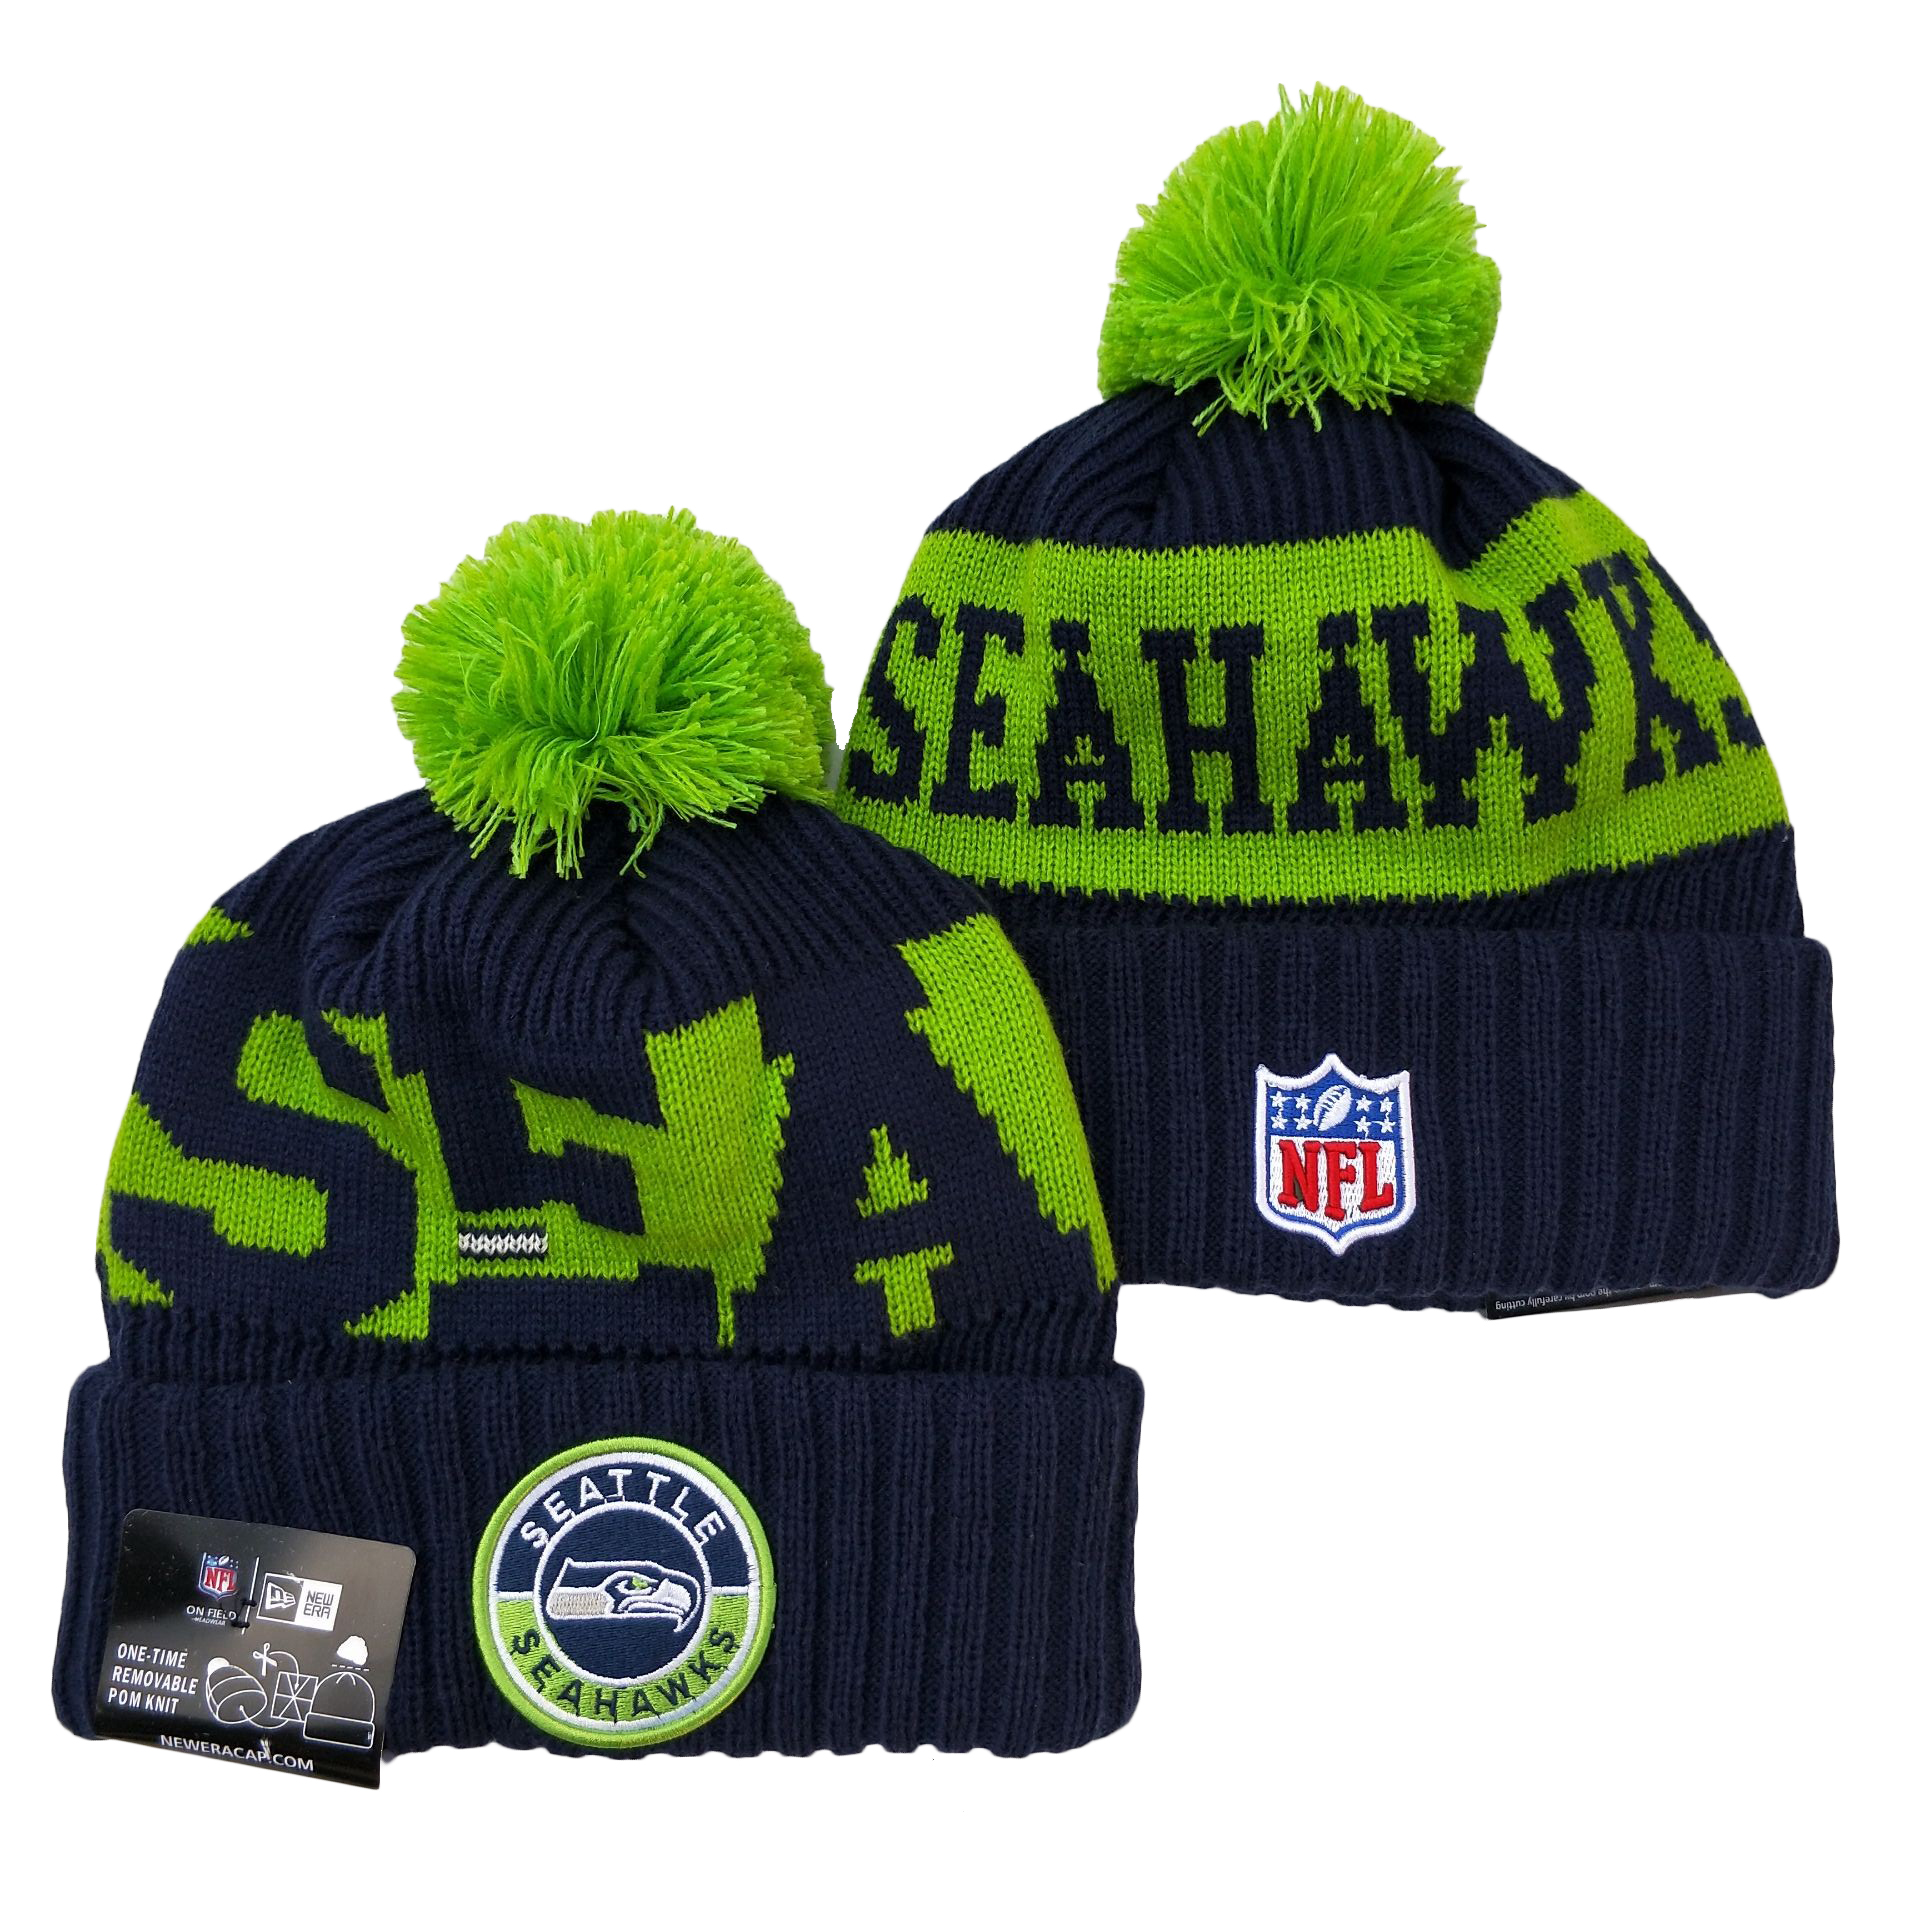 Seahawks Team Logo Navy Green 2020 NFL Sideline Pom Cuffed Knit Hat YD